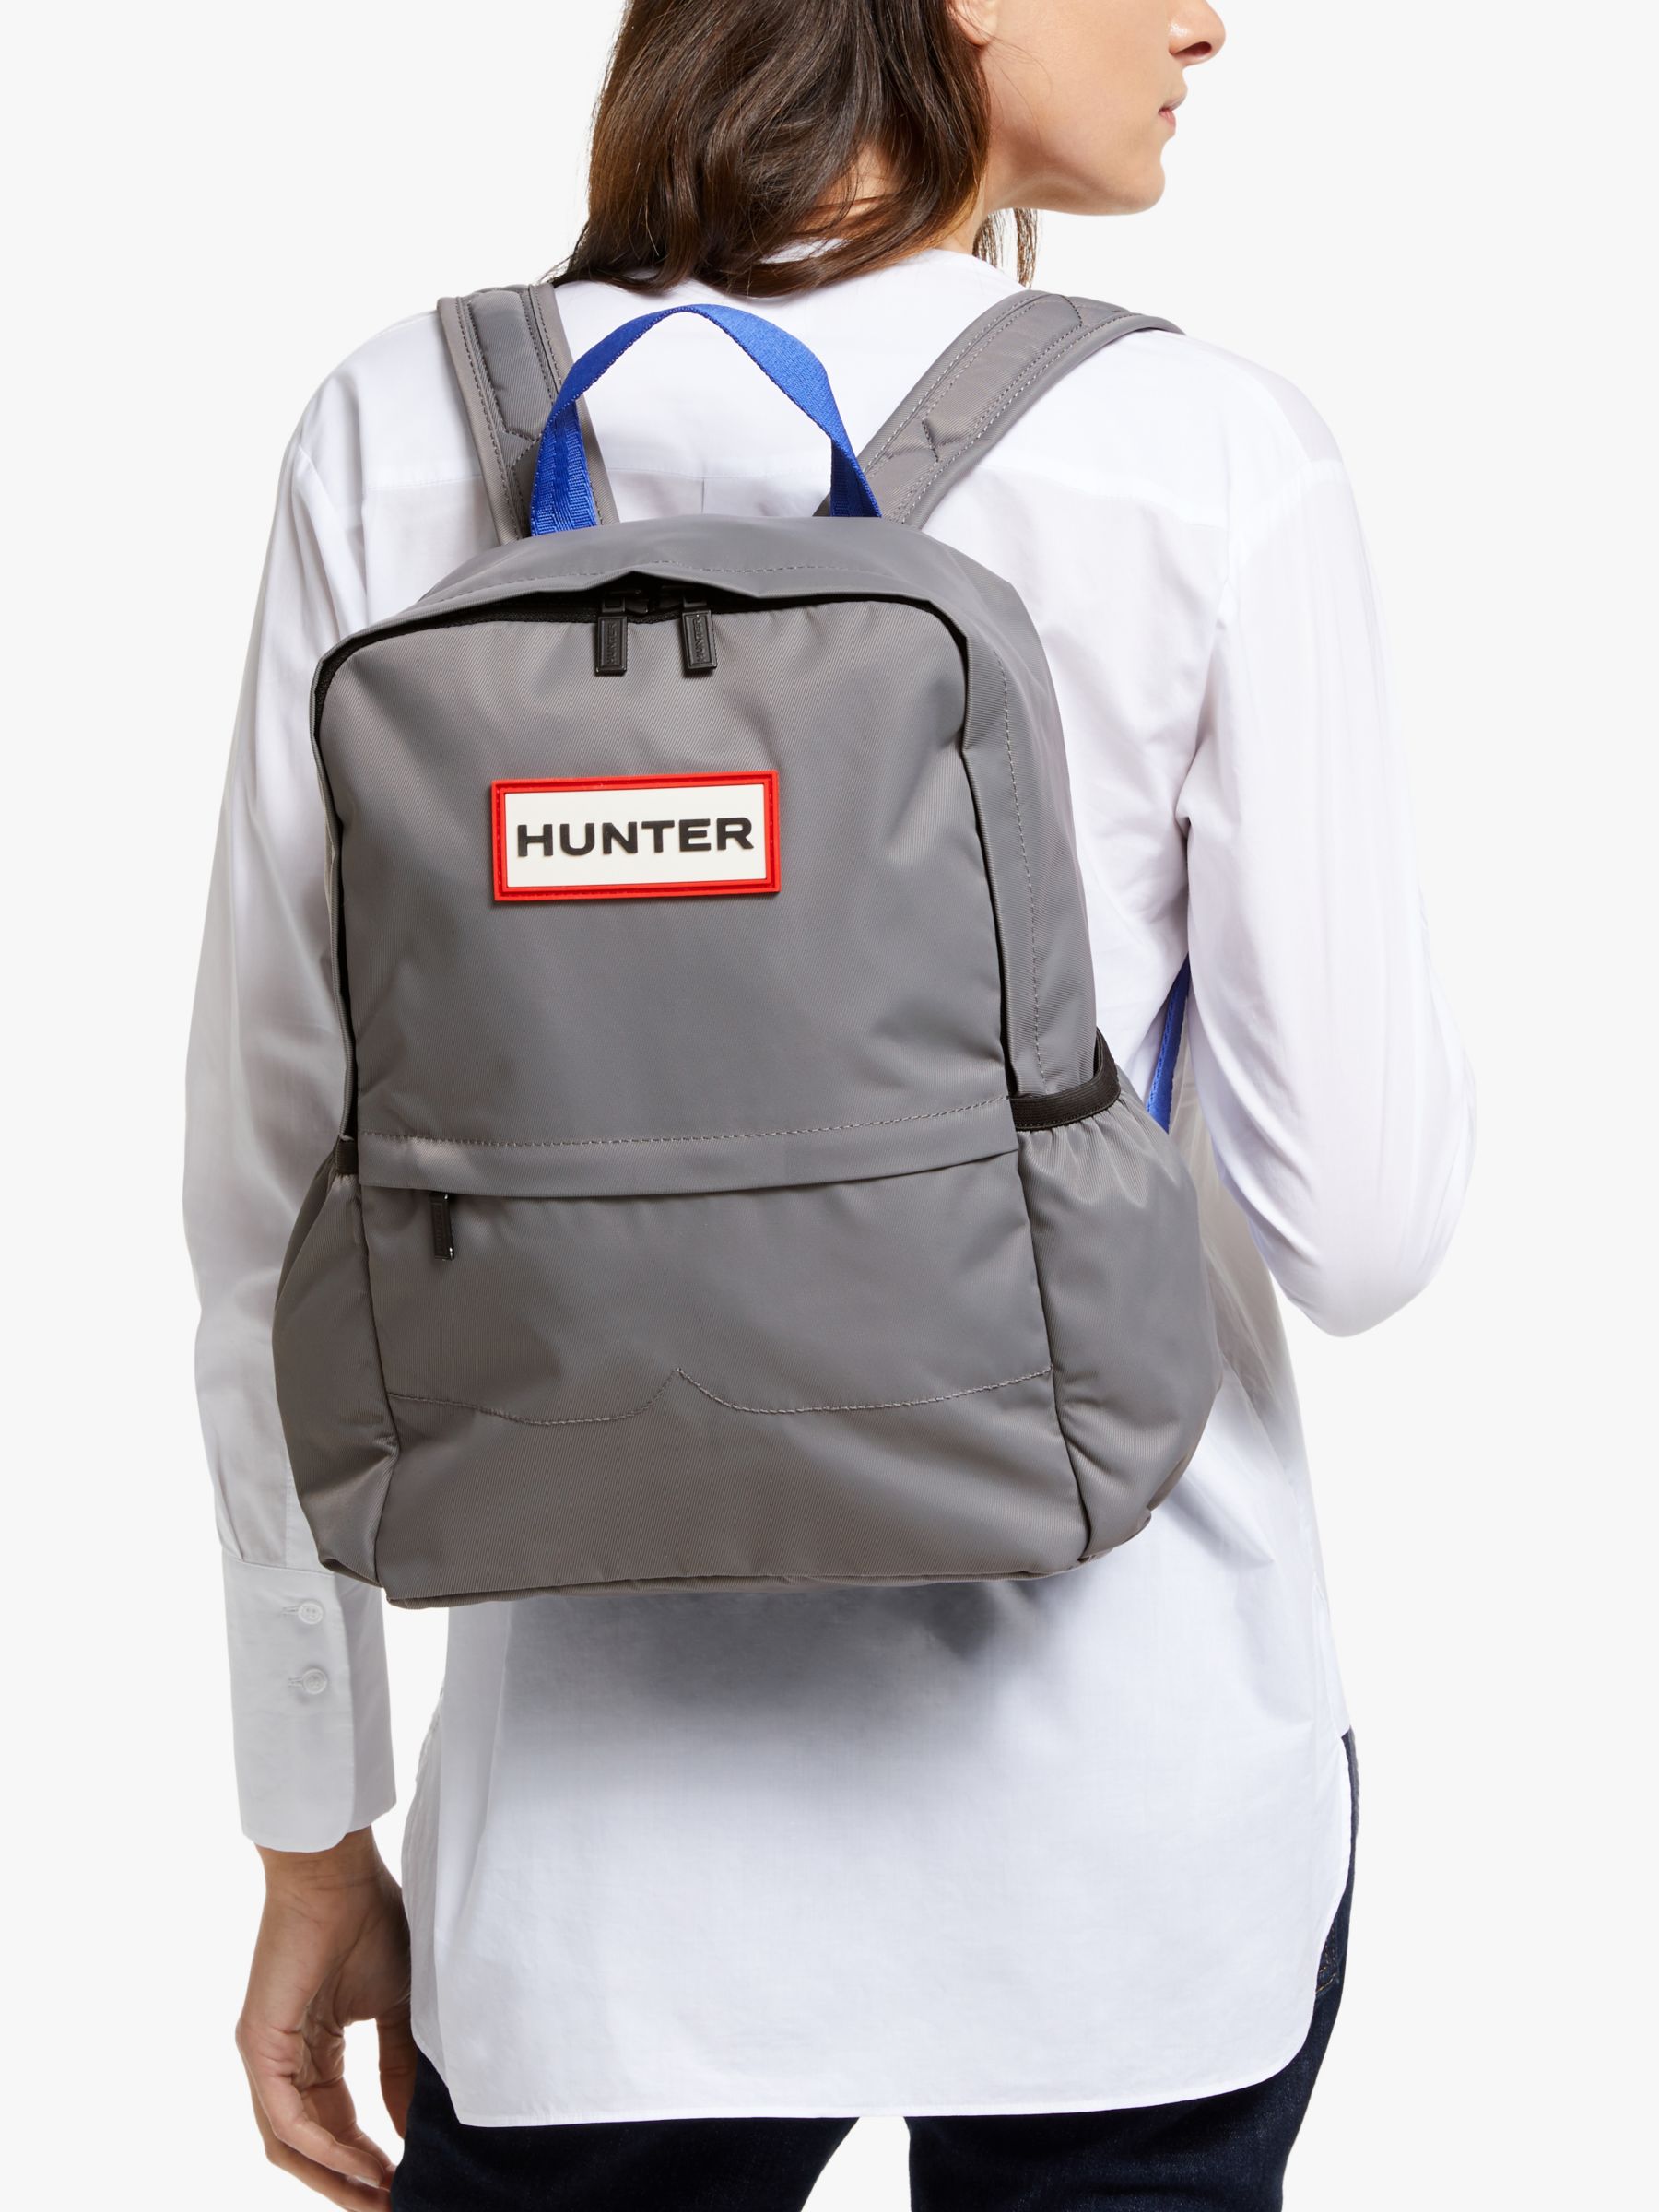 hunter backpack nylon